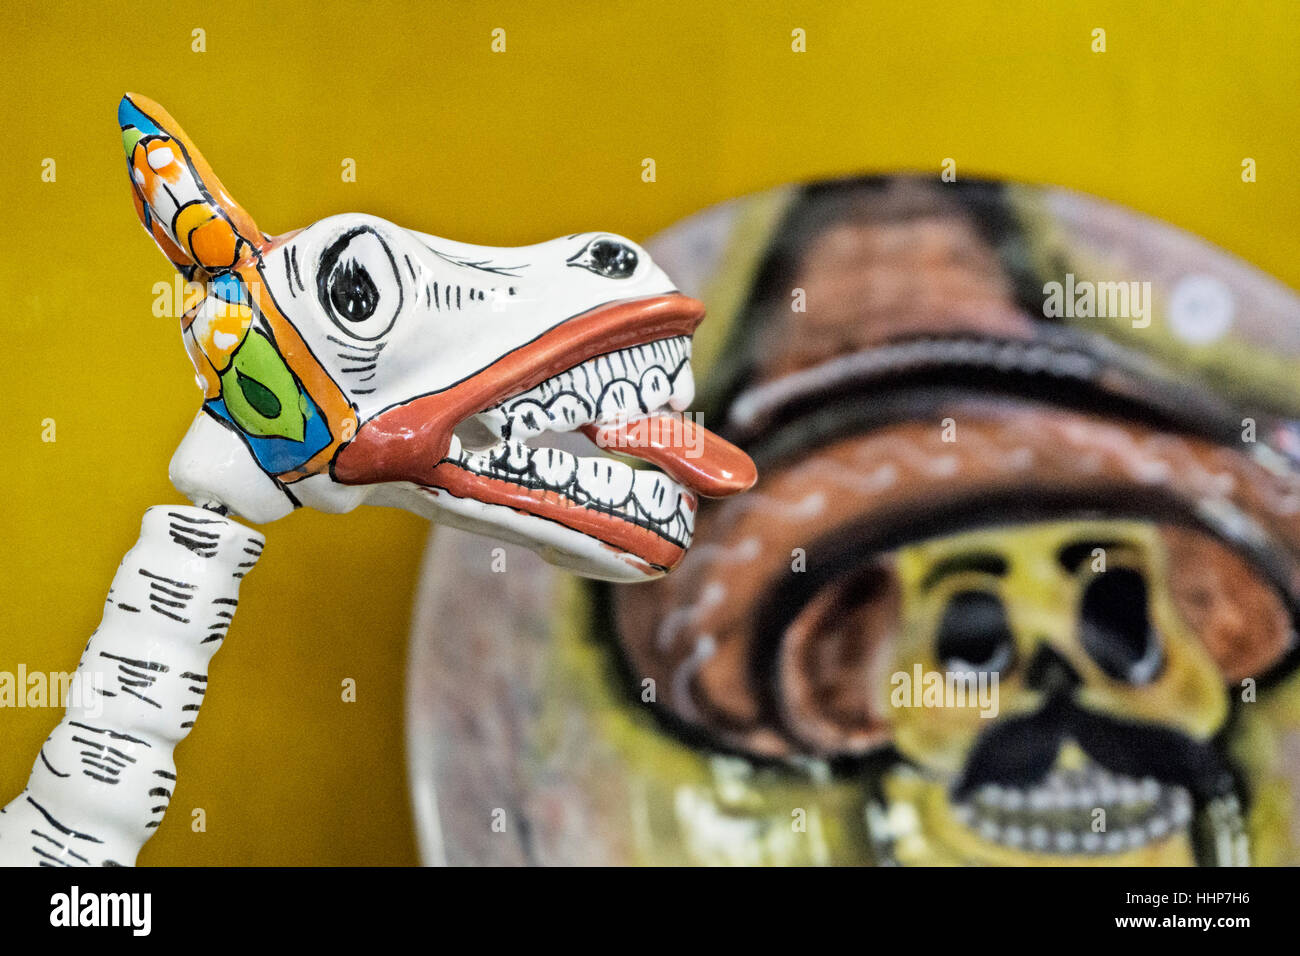 Tienda de artesanía cerámica pantalla figura de caballo con lengüeta roja colgando y placa de fondo en la pared cercana con el Día de Muertos cráneo del campesino con bigotes Foto de stock